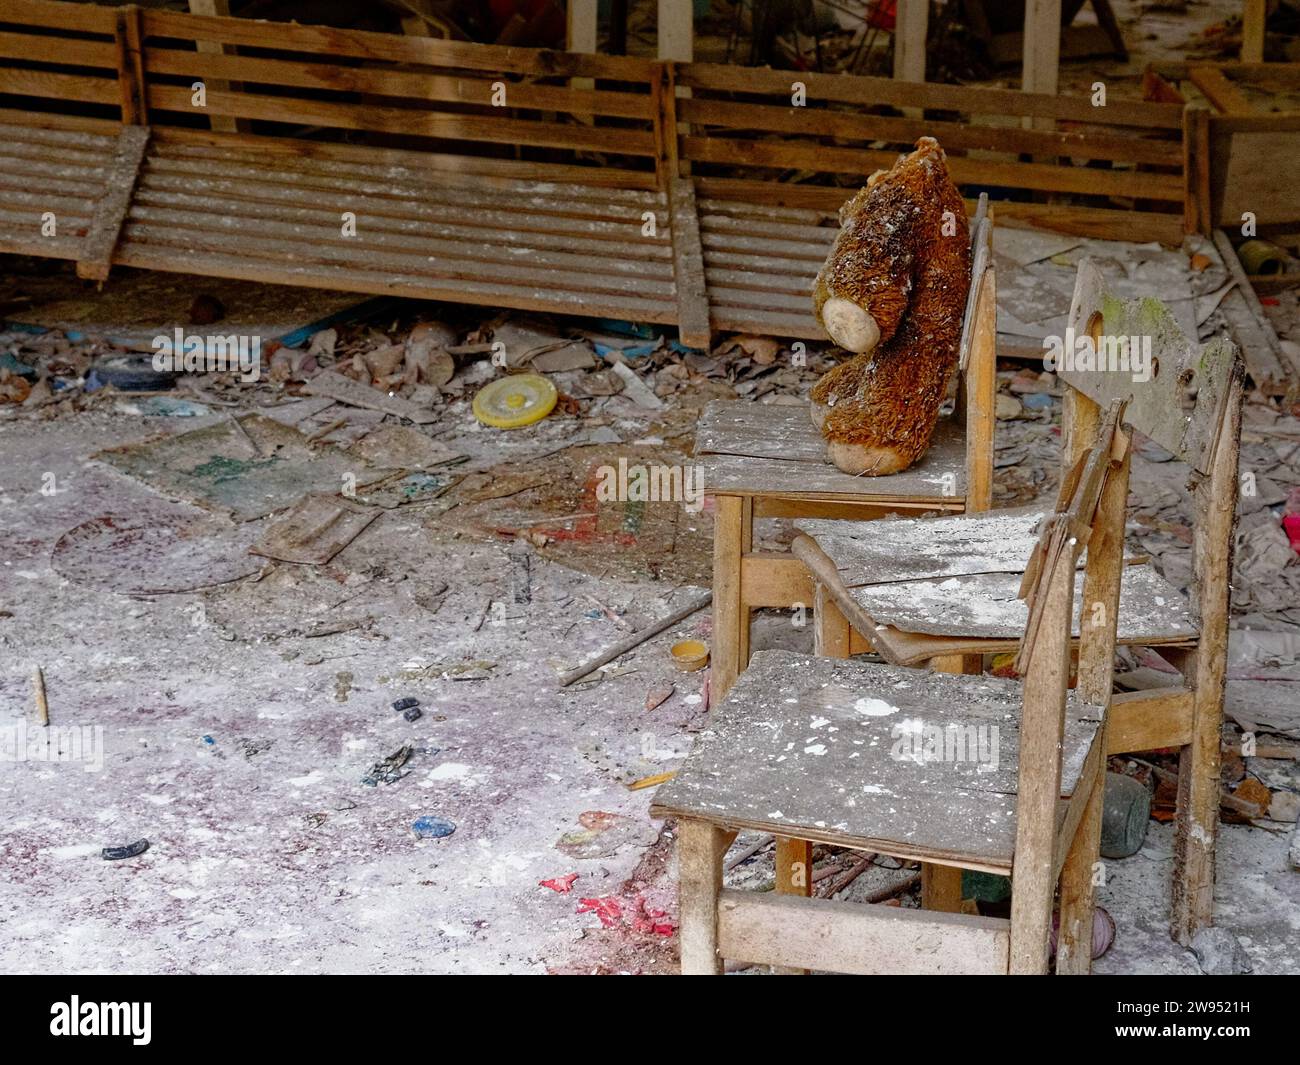 L'immagine mostra una stanza trascurata con un orsacchiotto su una sedia. Peluche sporco sulla sedia. Un orsacchiotto senza testa in un asilo abbandonato a PRI Foto Stock